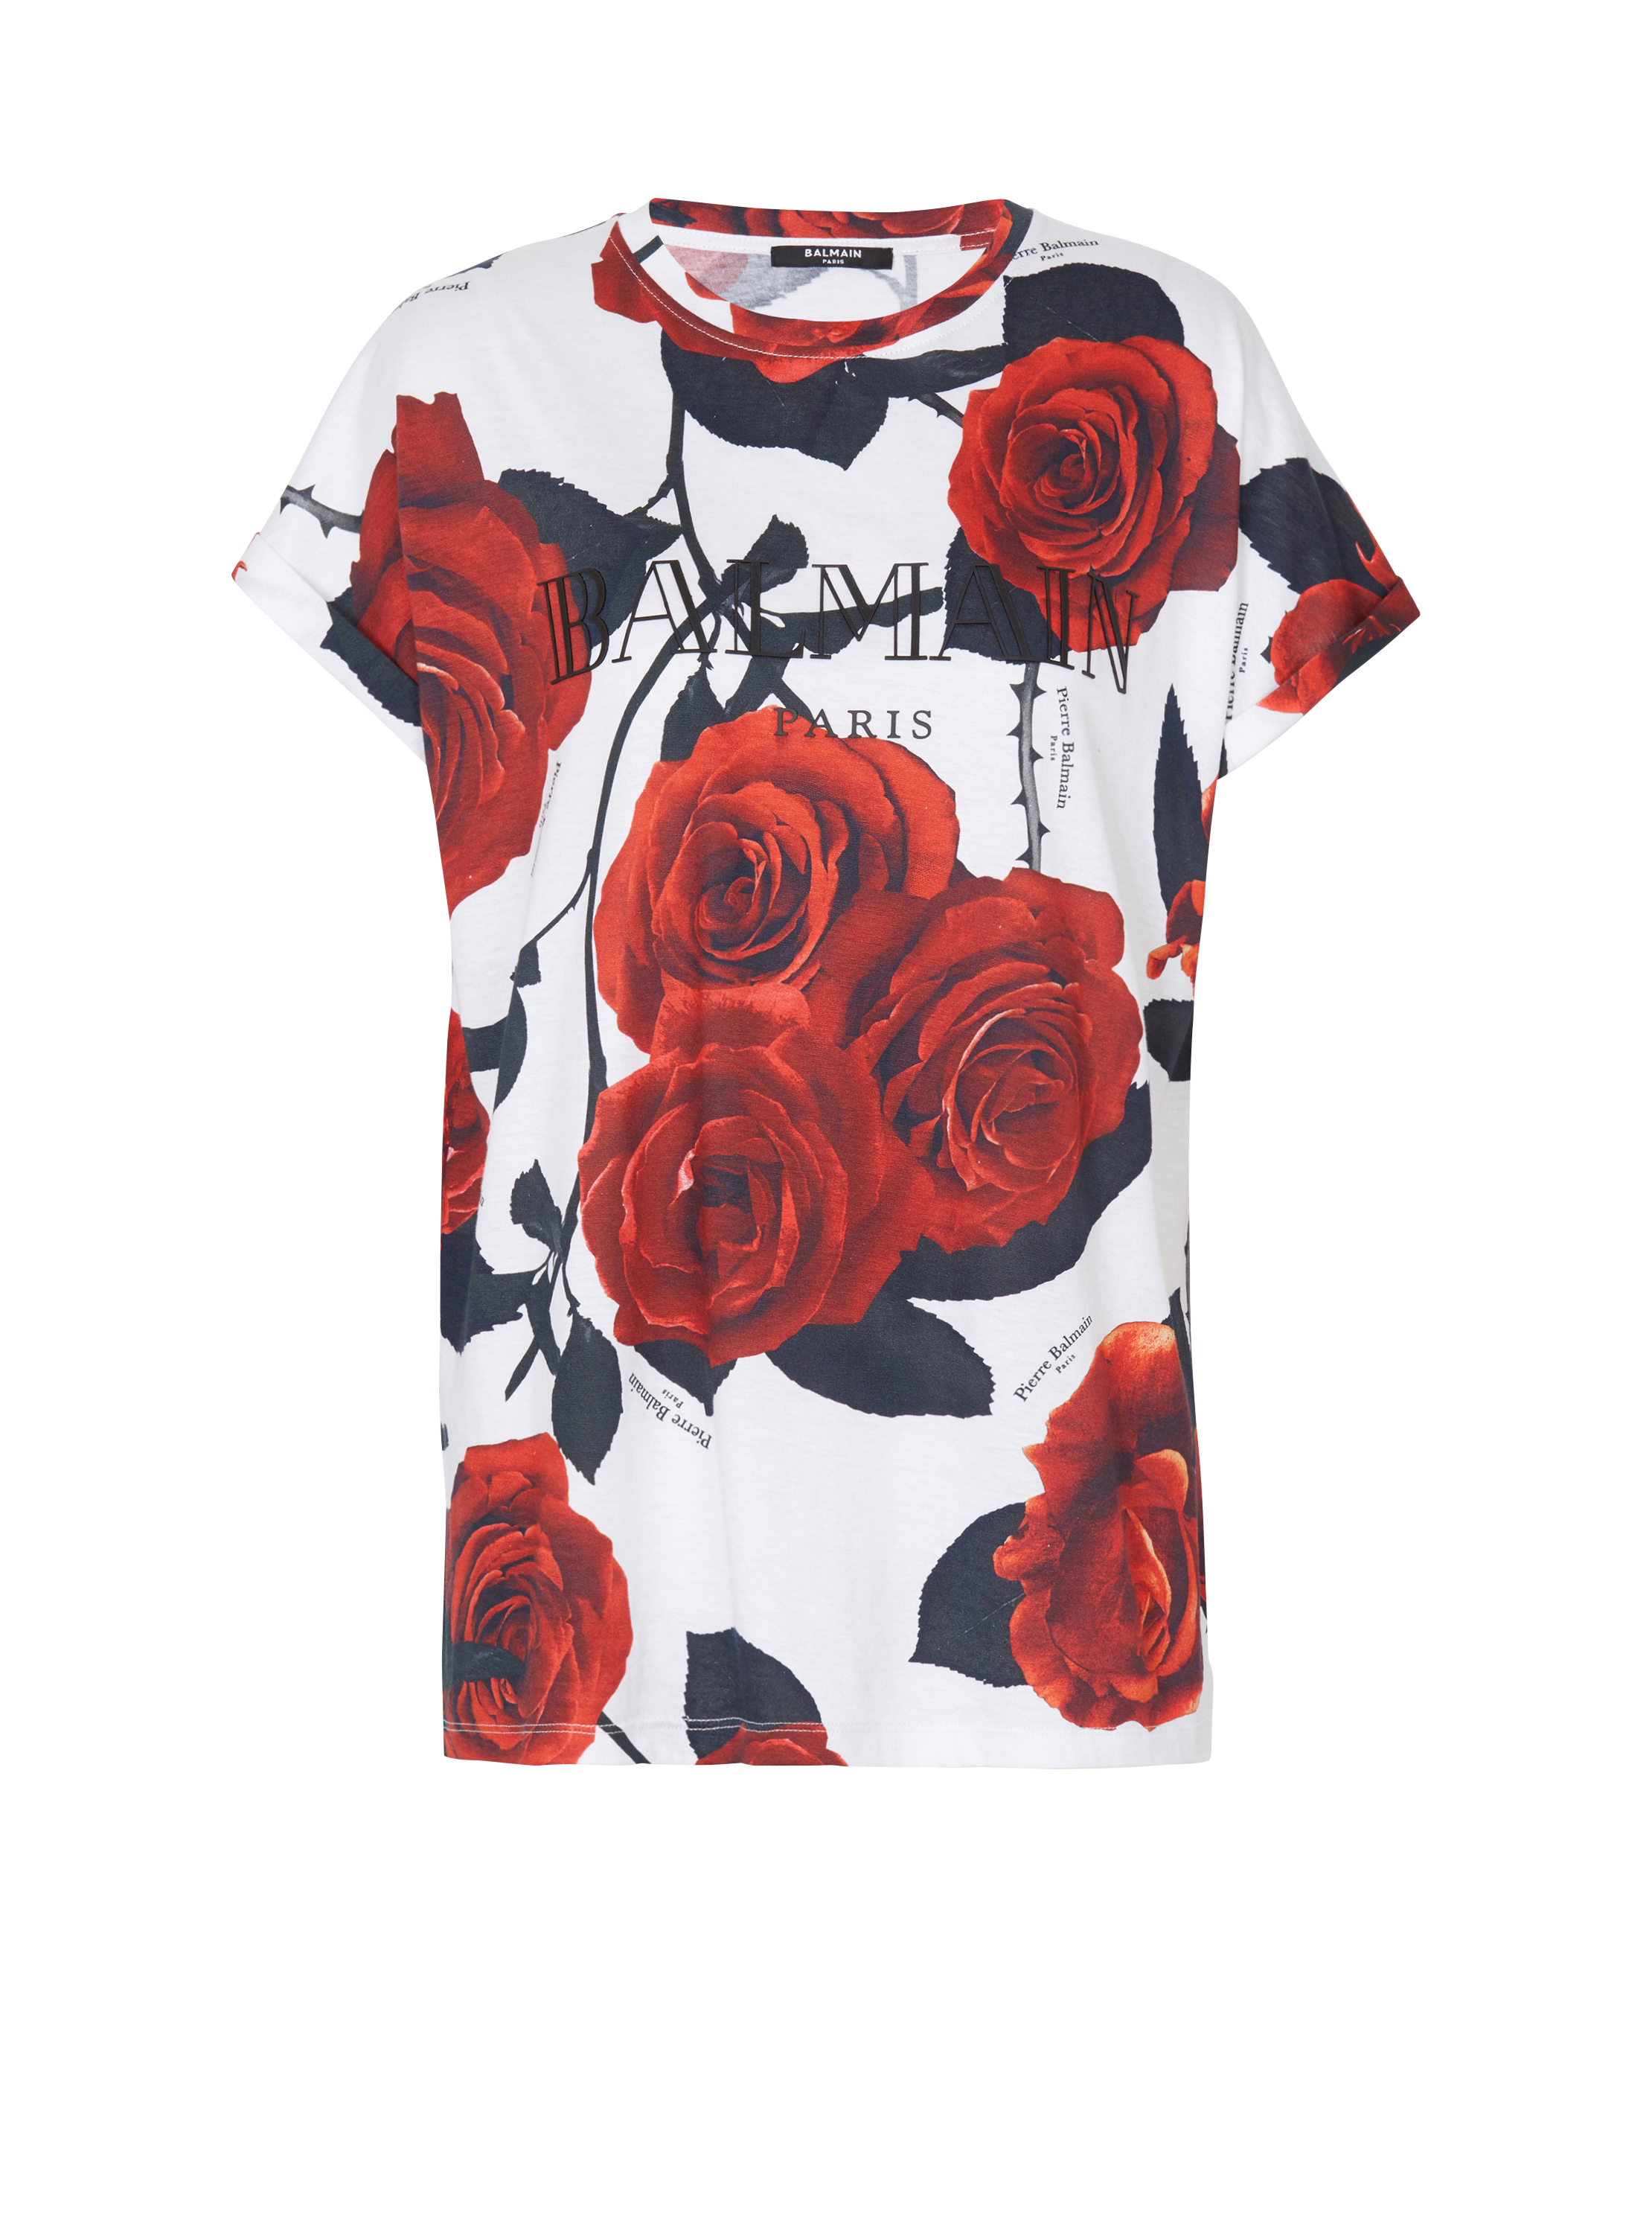 T-shirt Balmain Vintage imprimé Red Roses, rouge, hi-res